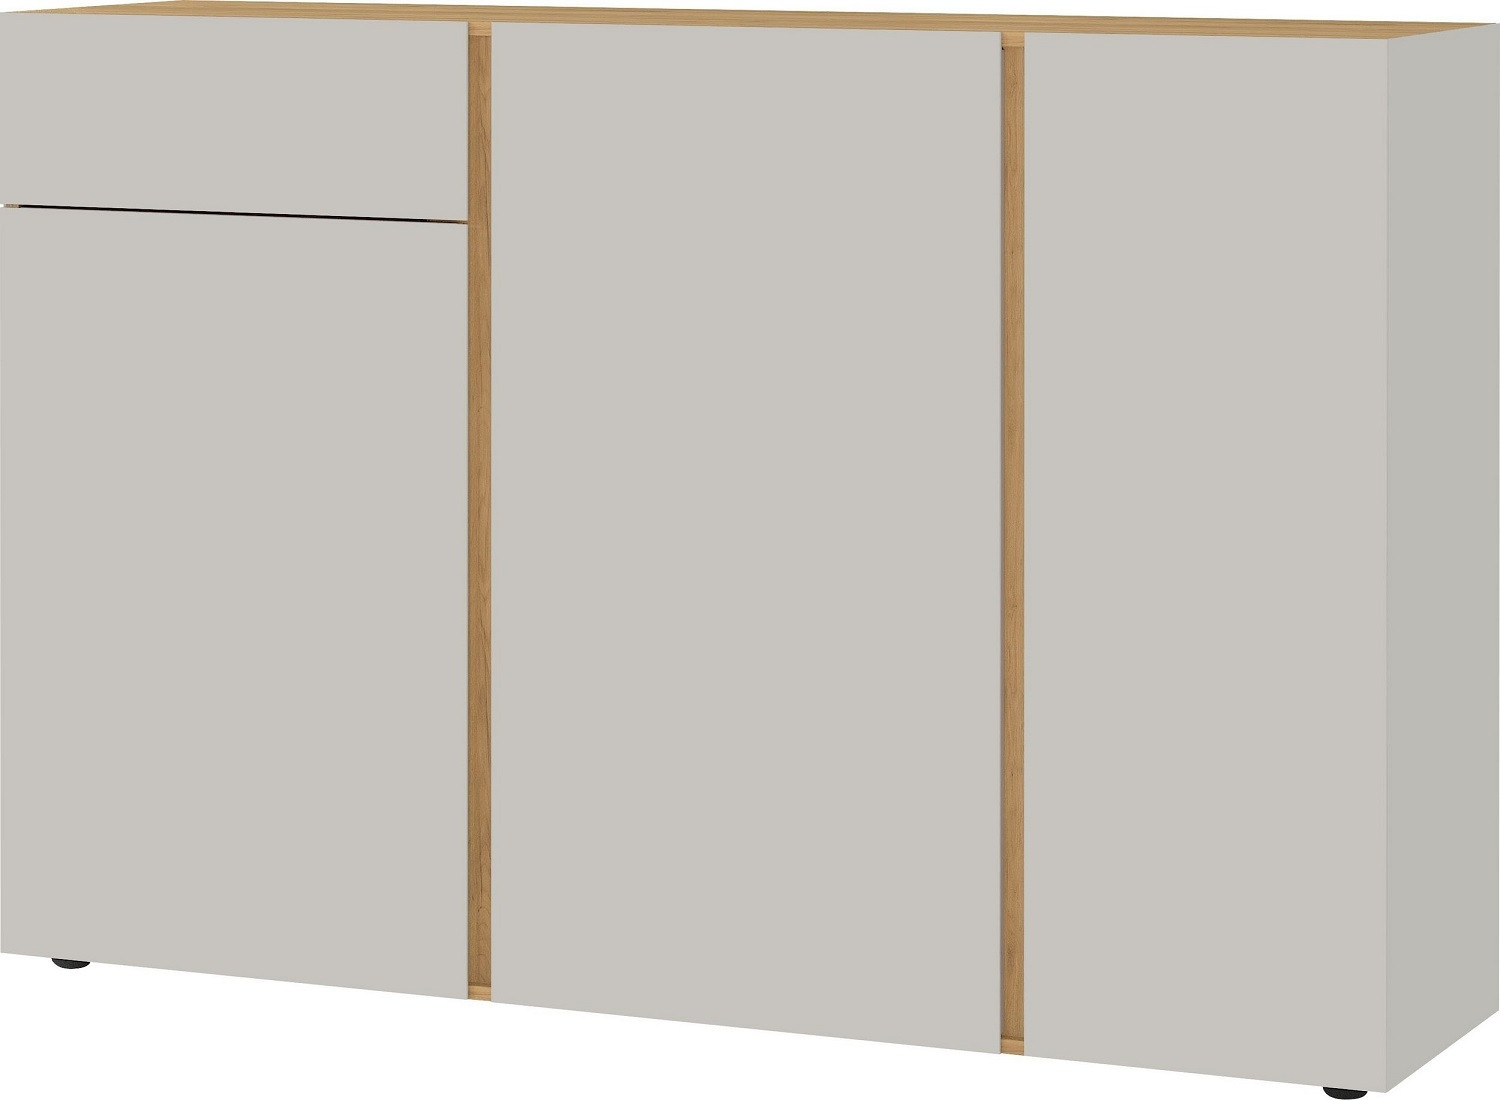 Dressoir Mesa 152 cm breed in Cashmere met navarra eiken